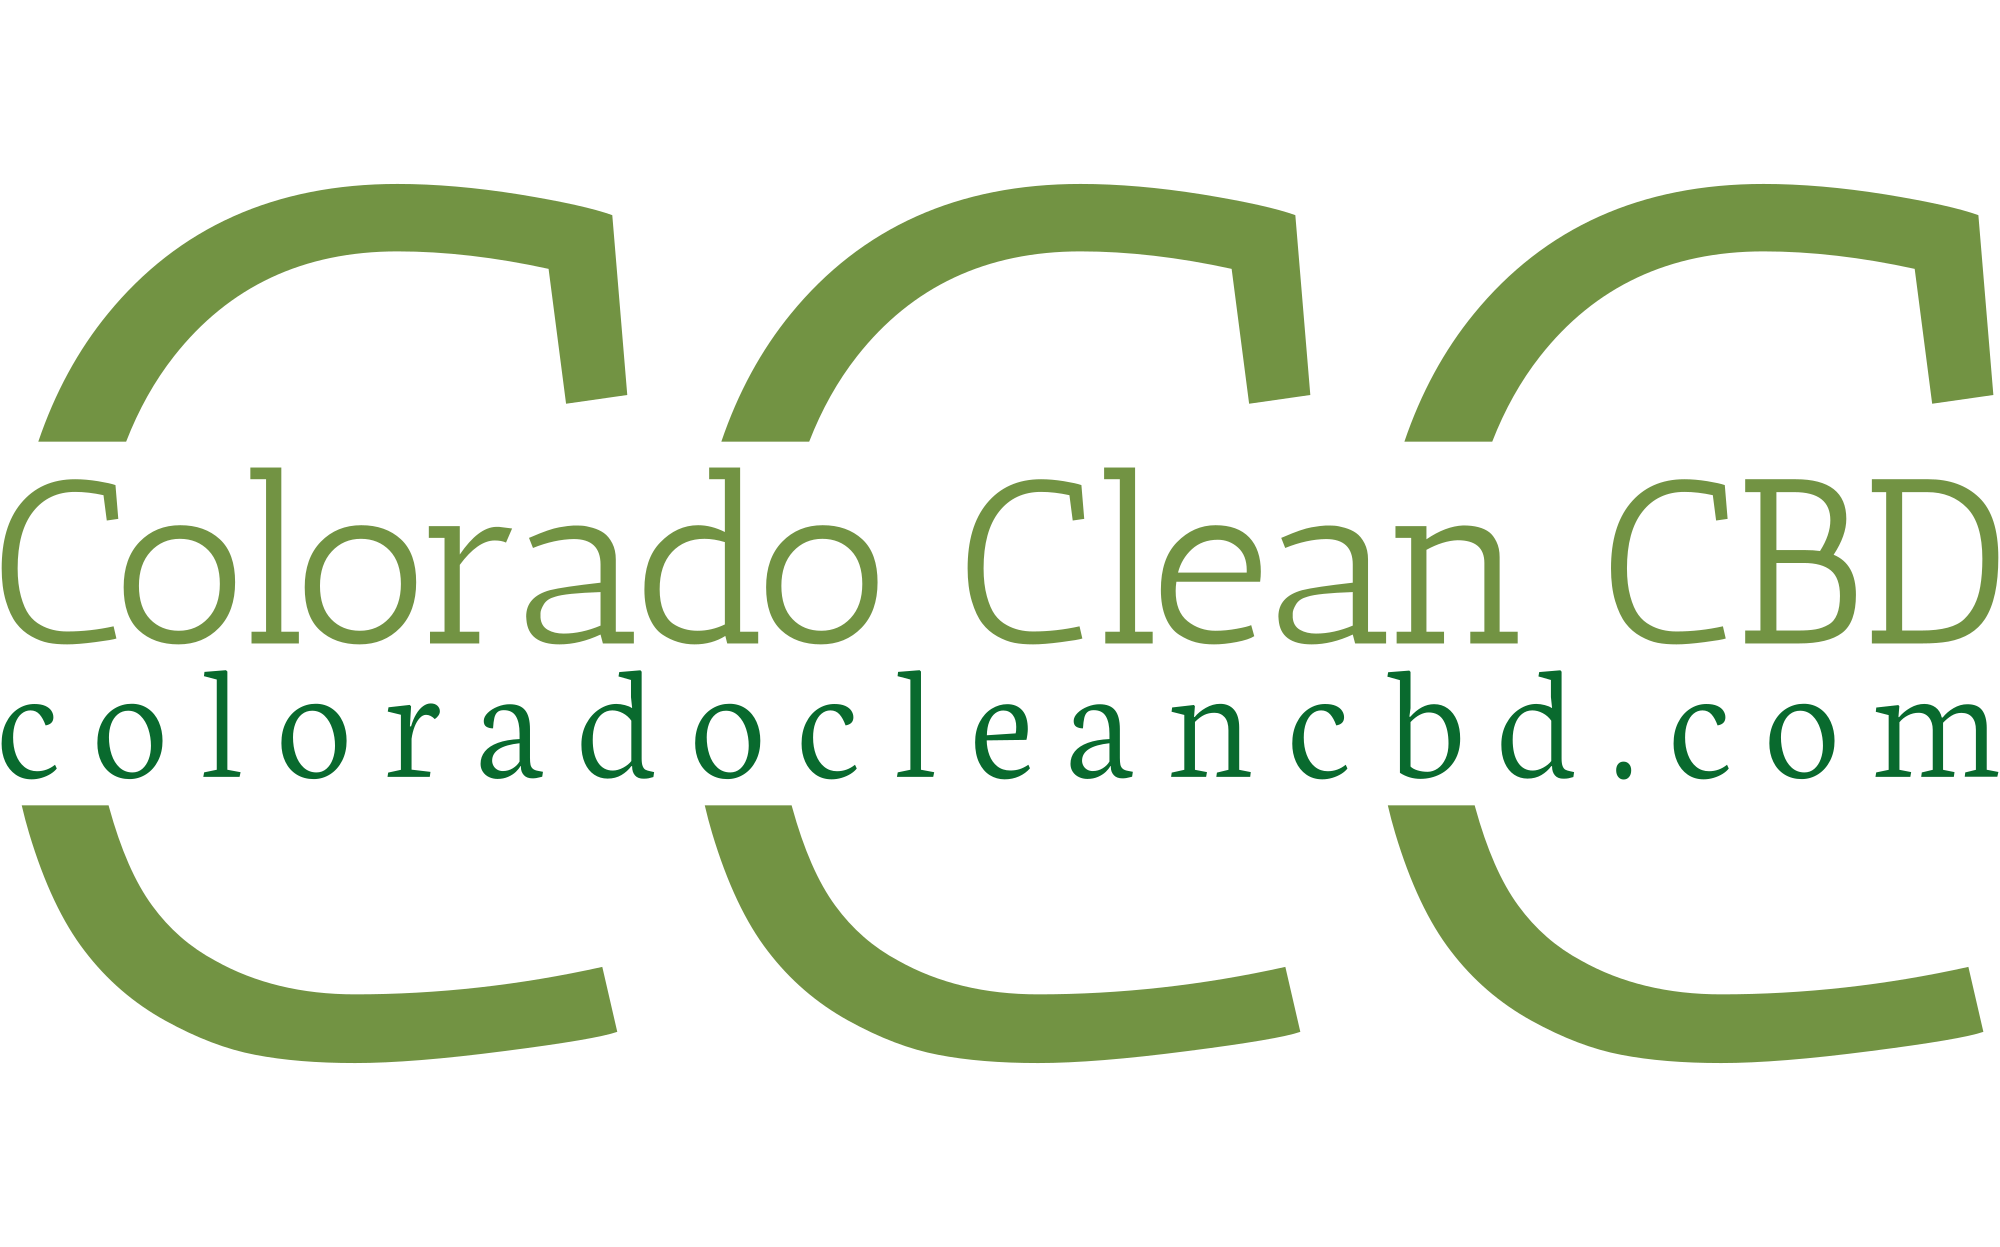 Colorado Clean CBD